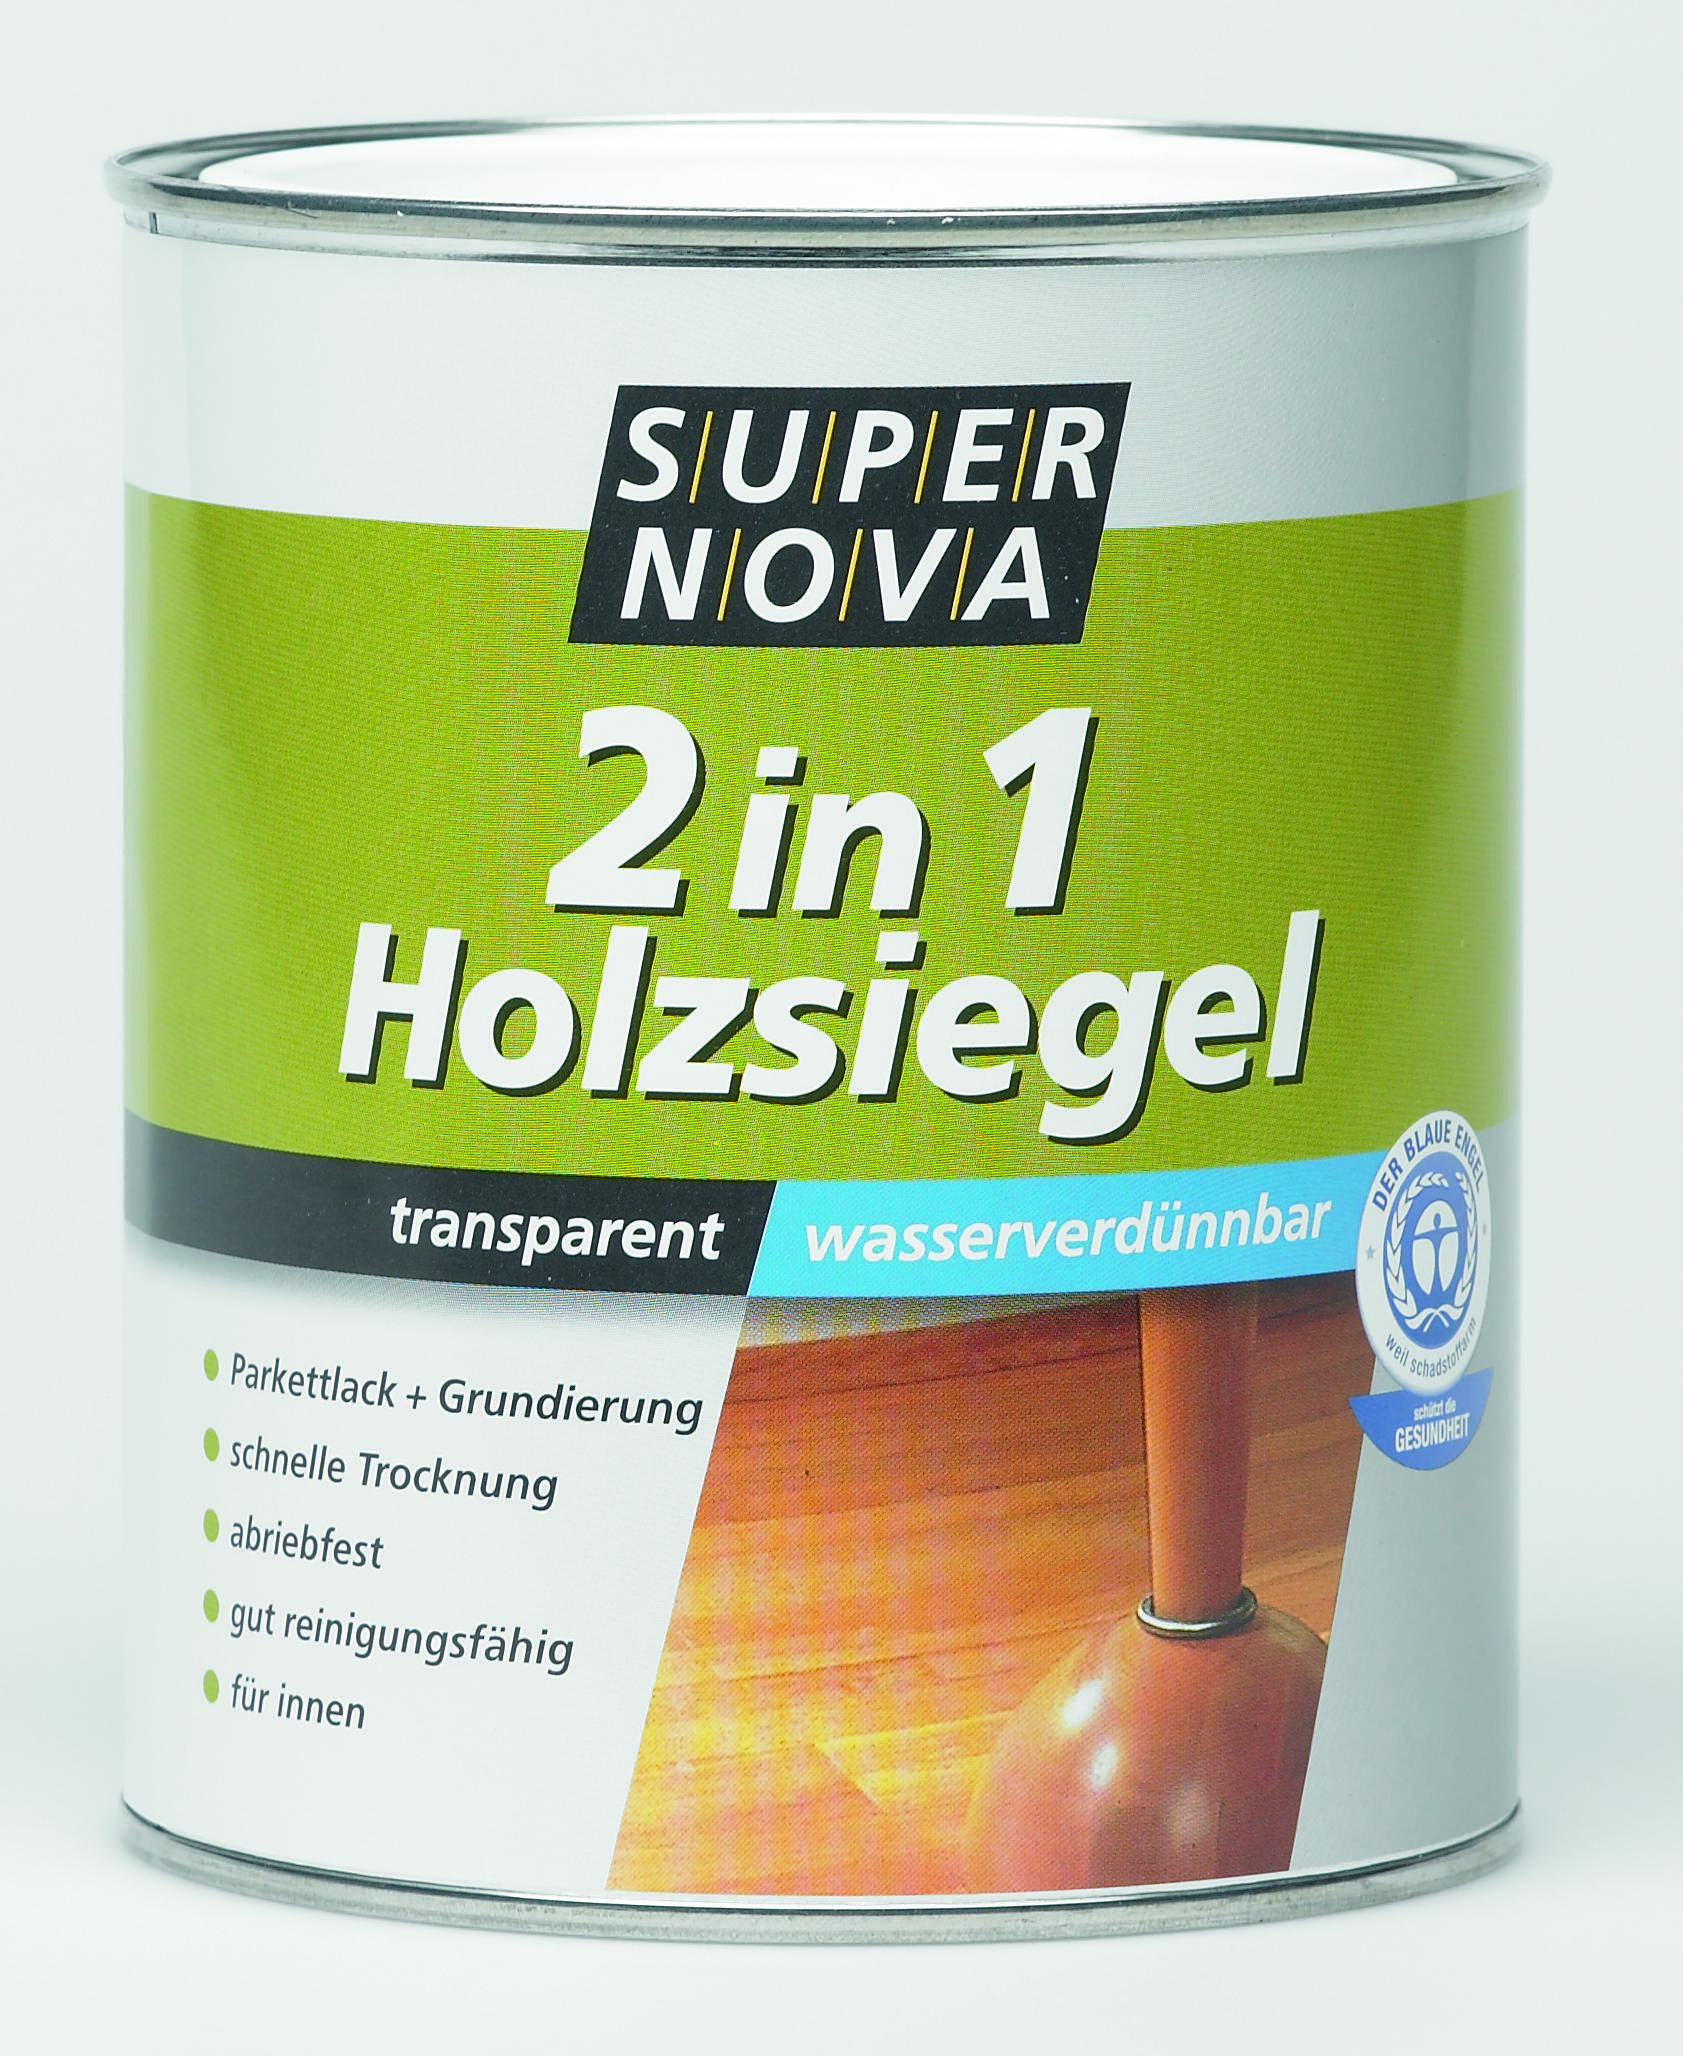 Meffert Super Nova 2 in 1 Holzsiegel, transparent